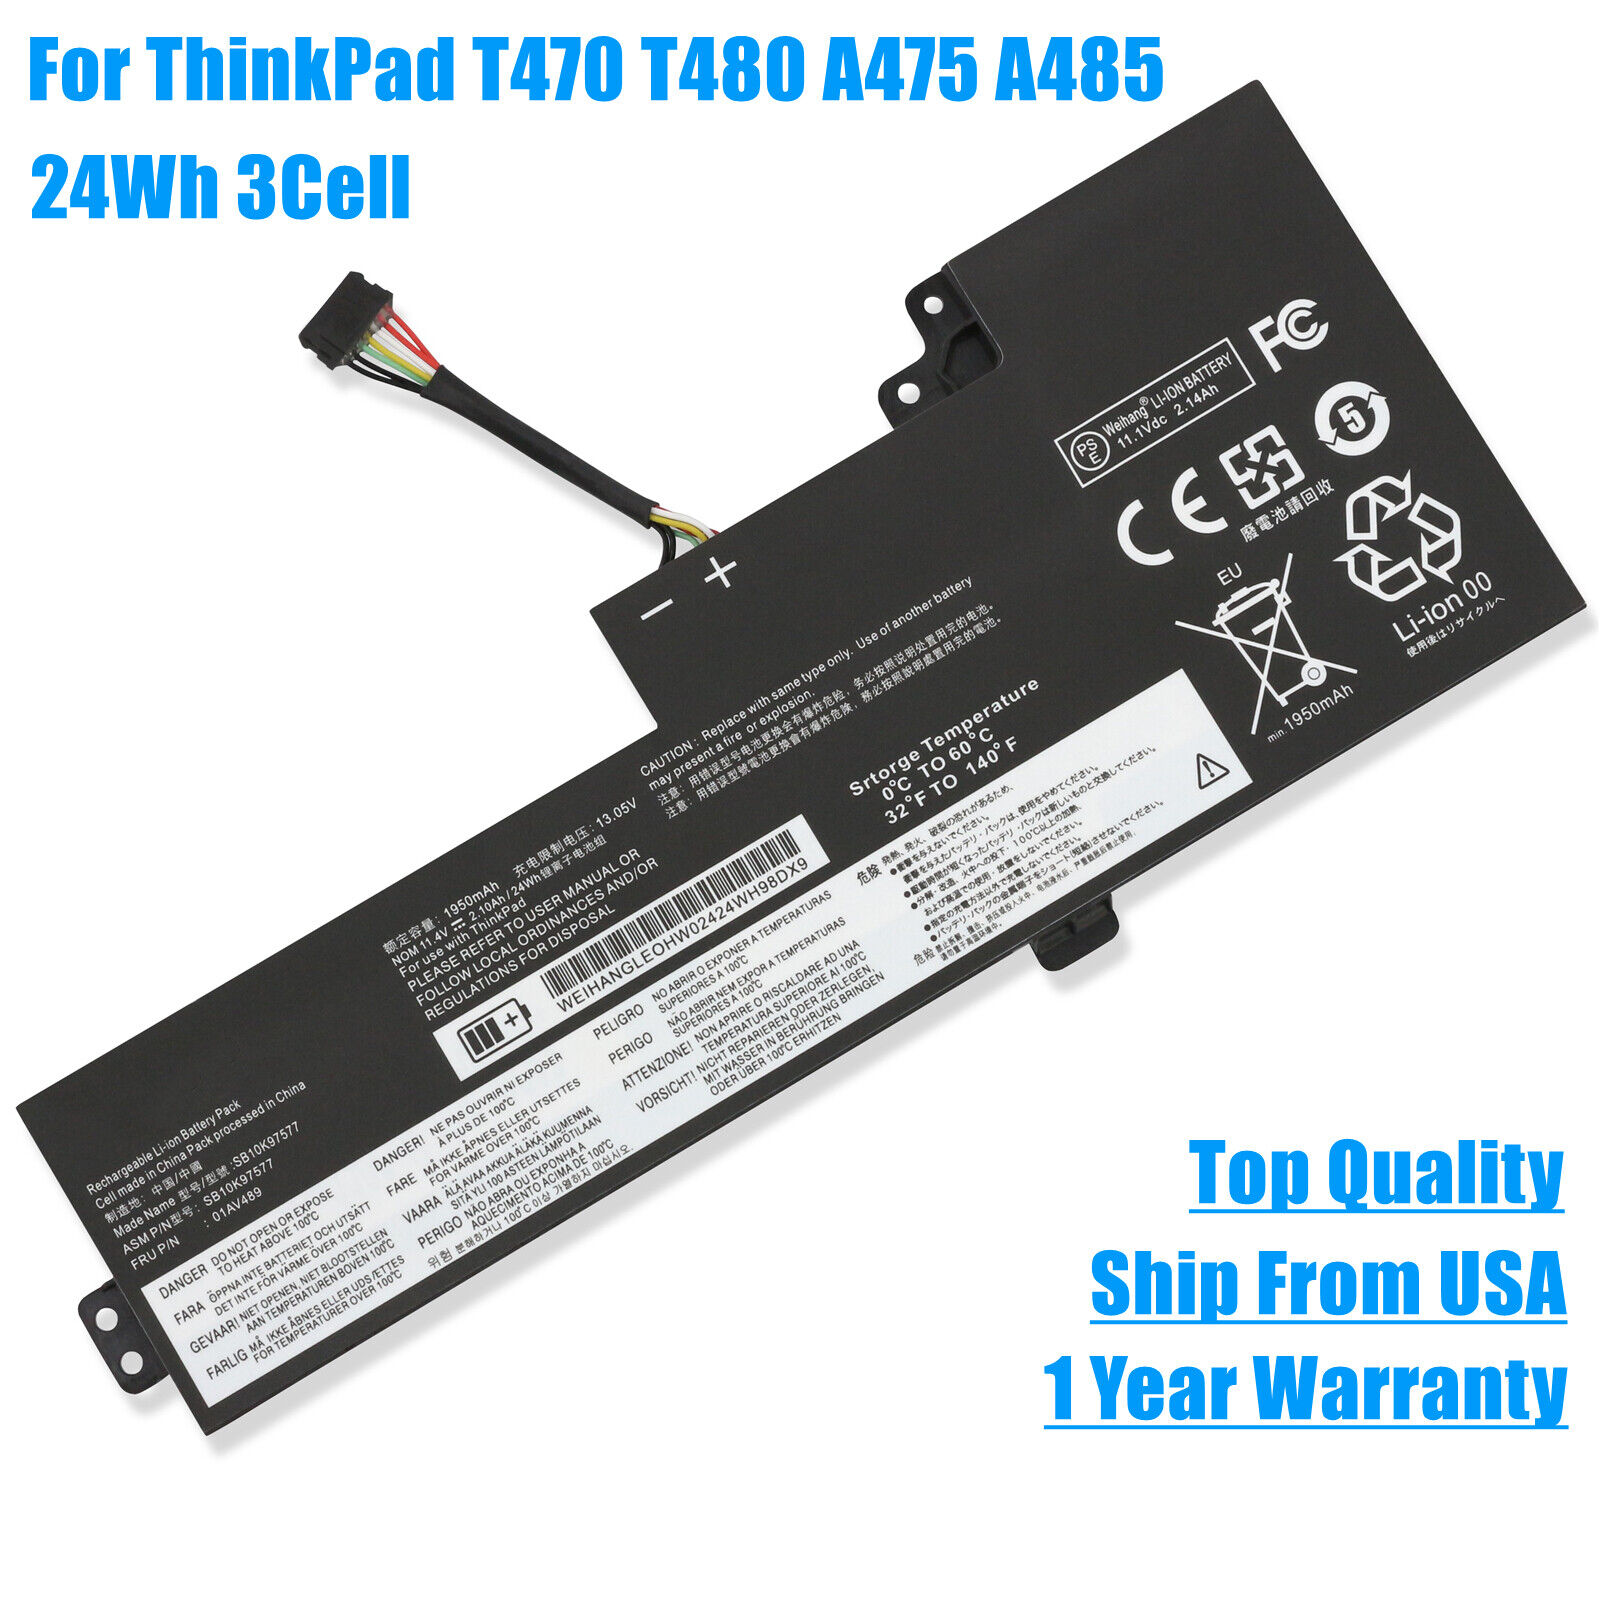 OEM New Battery For Lenovo ThinkPad T470 T480 A475 A485 TP25 01AV420 01AV489